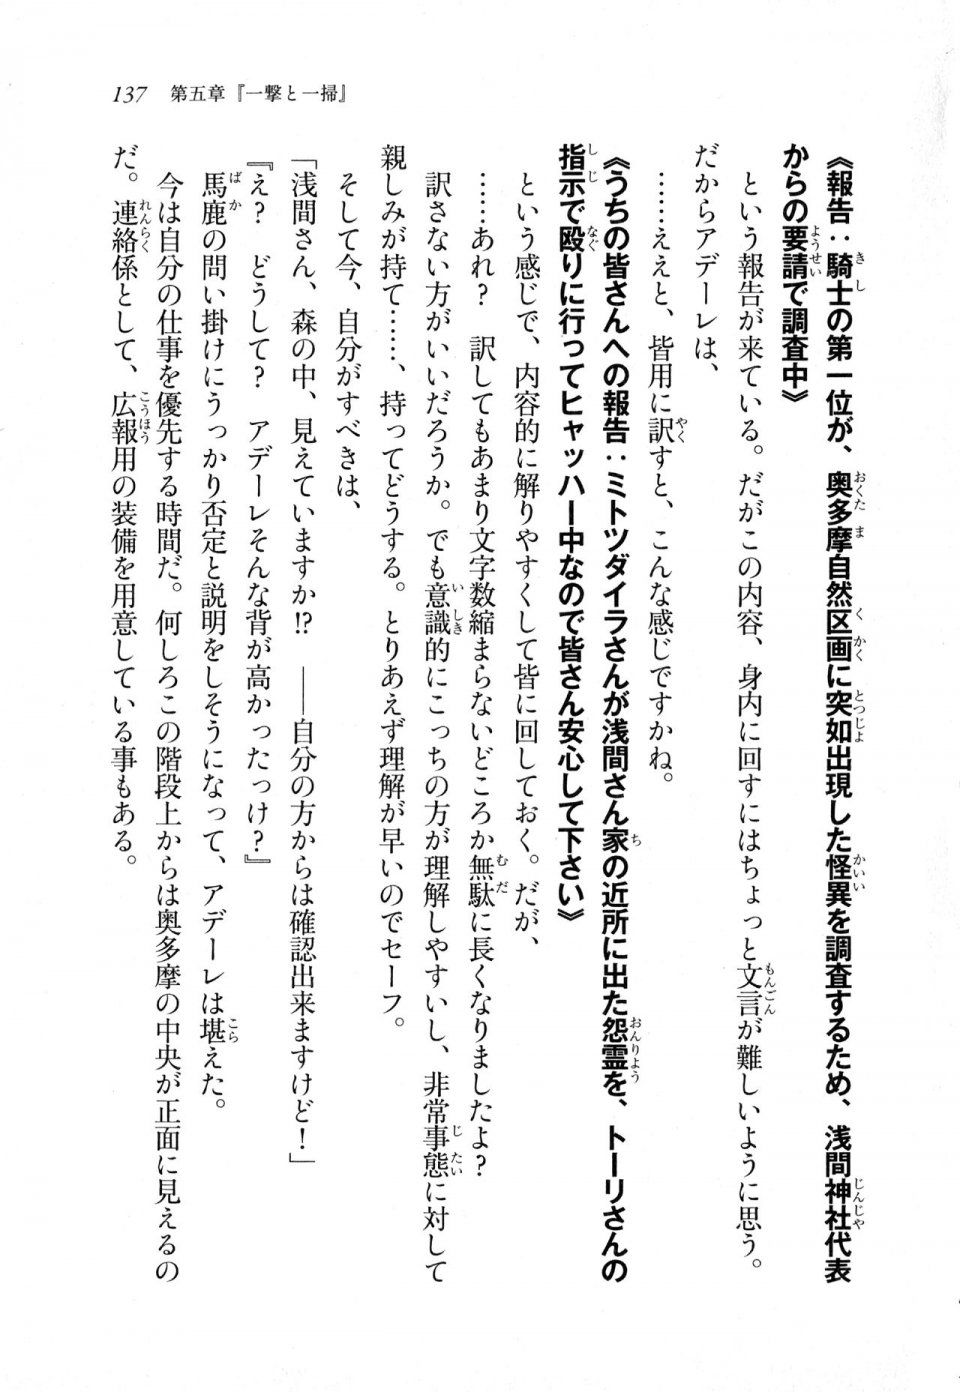 Kyoukai Senjou no Horizon LN Sidestory Vol 1 - Photo #135